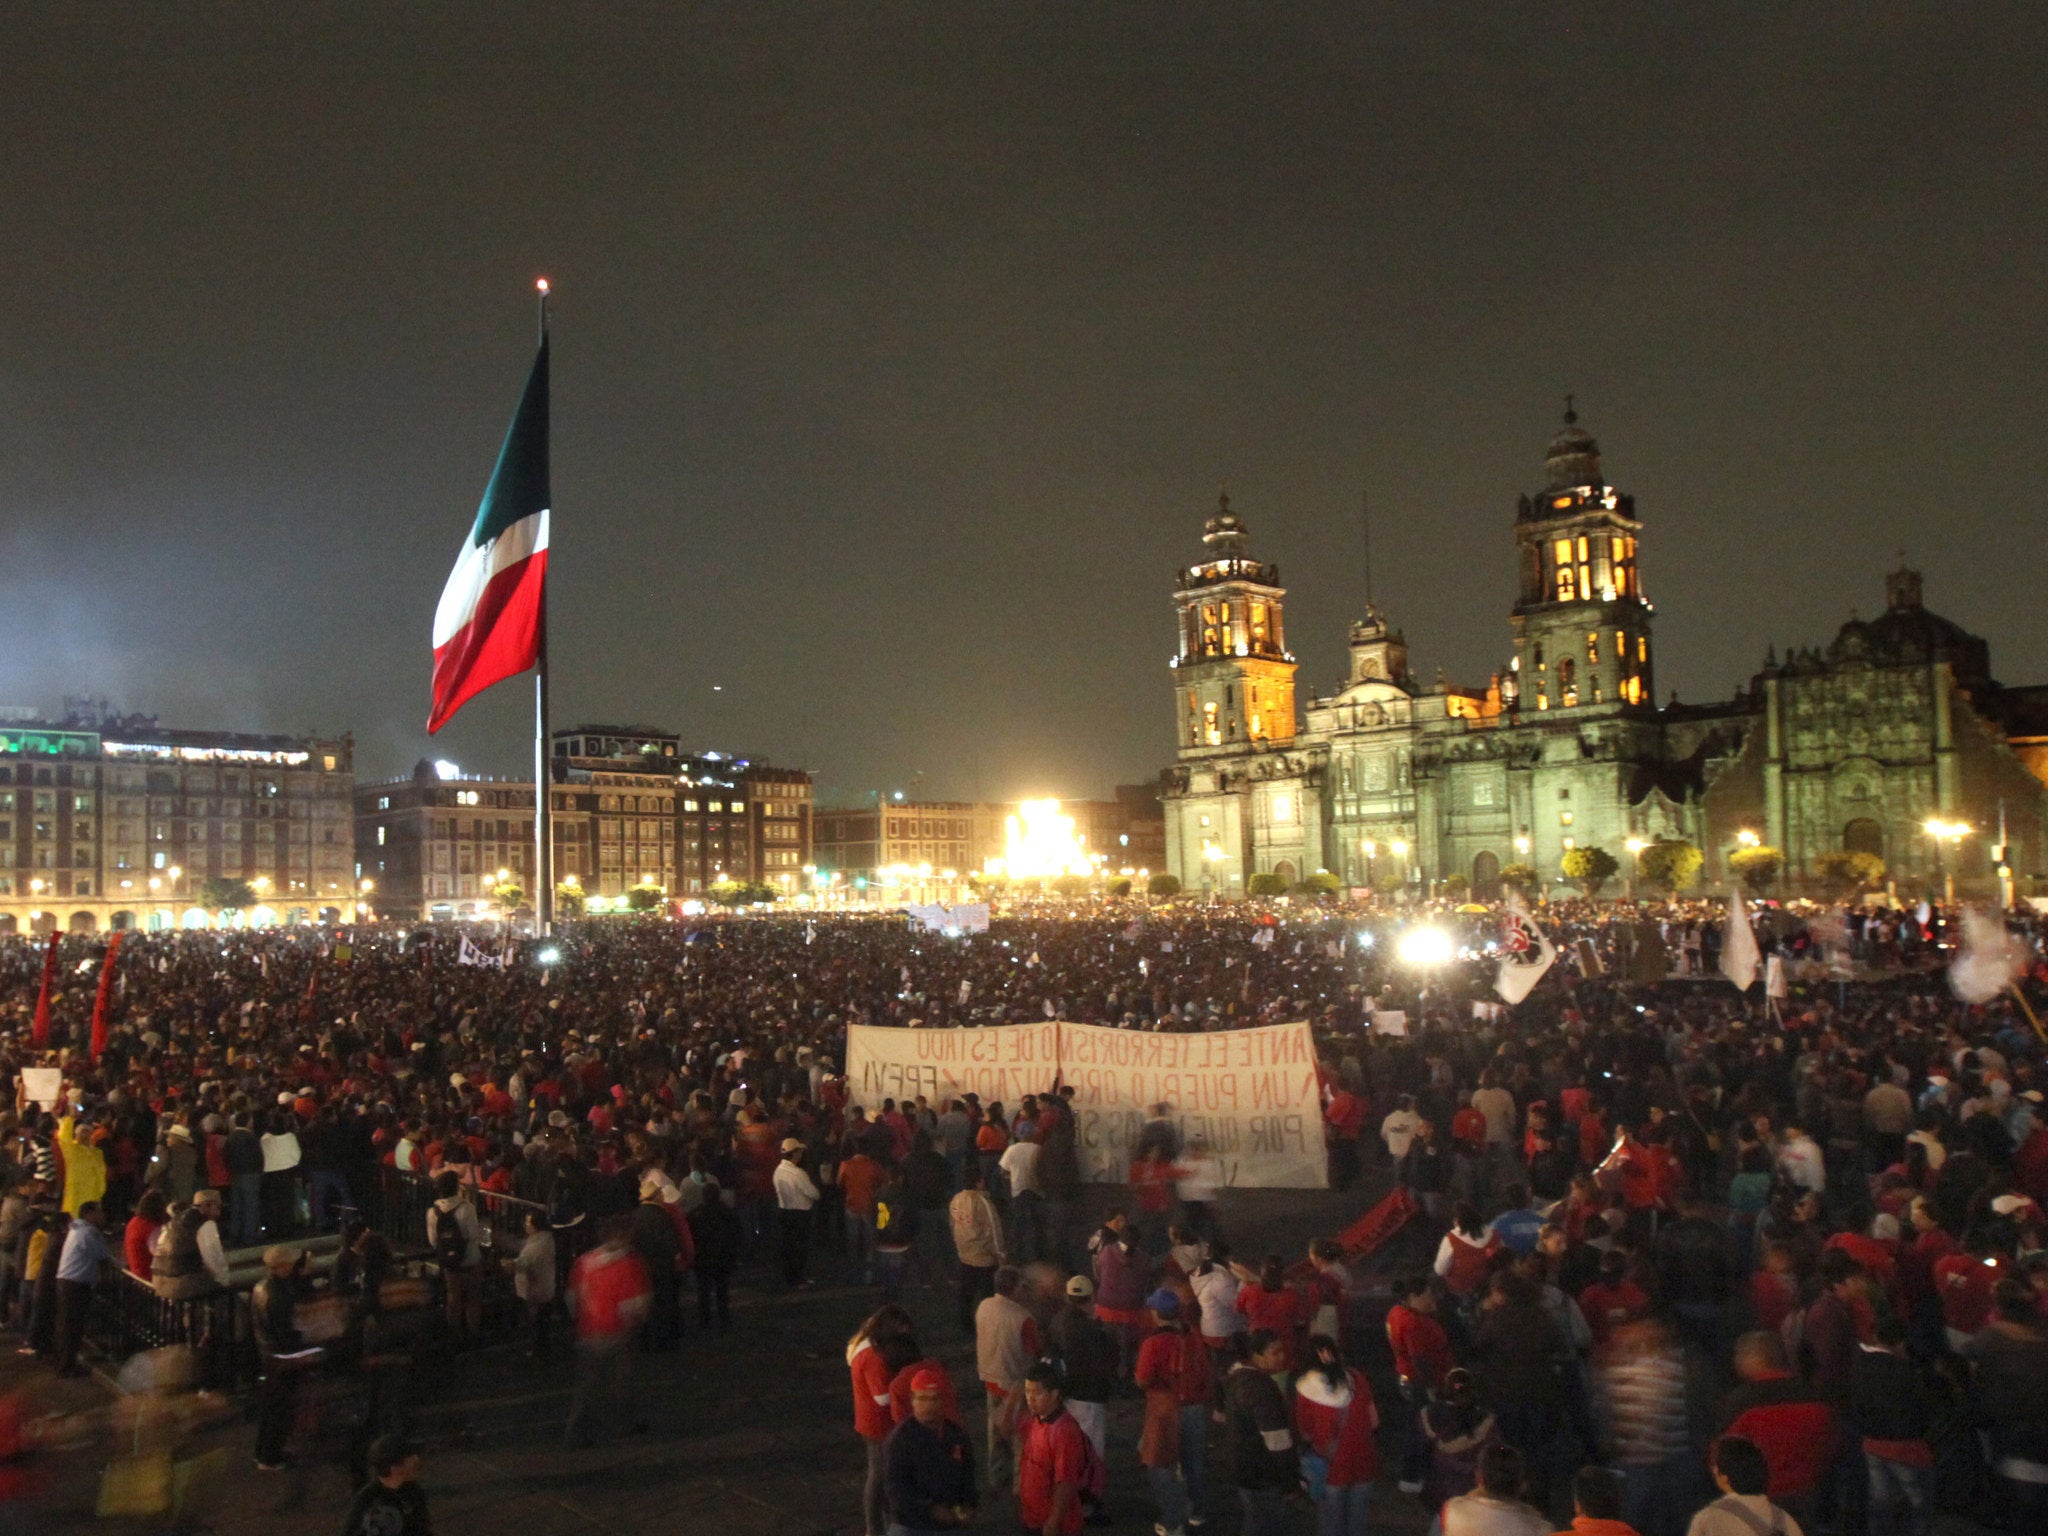 Tens of thousands of people congregated in Plaza de la Constitución in Mexico City